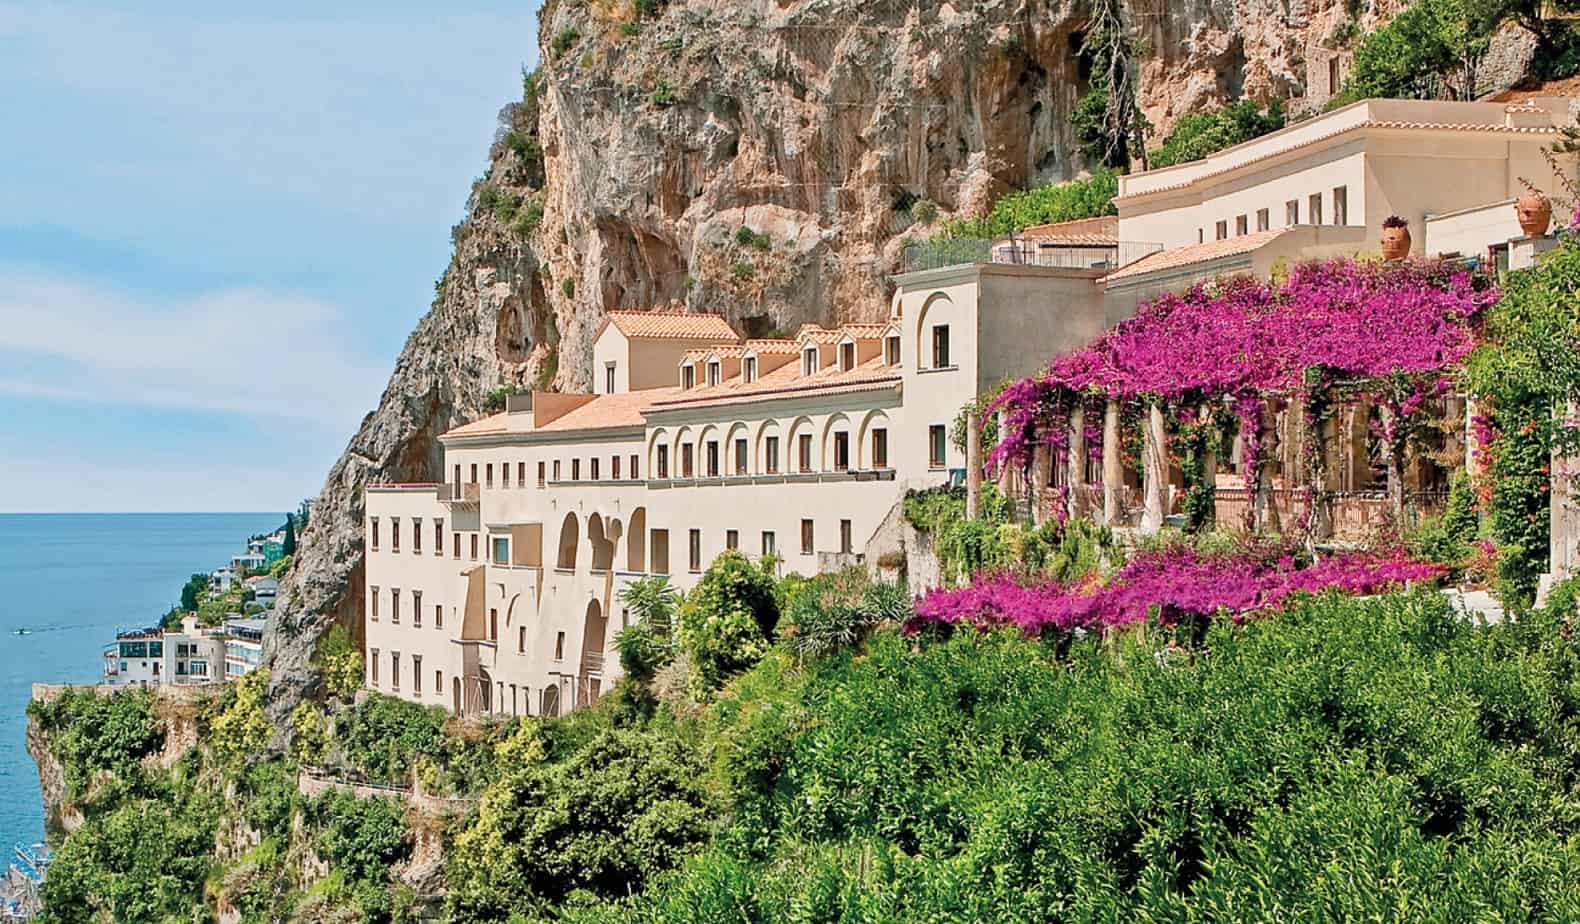 10 Best Hotels In Italy On Amalfi Coast Alex Faraway